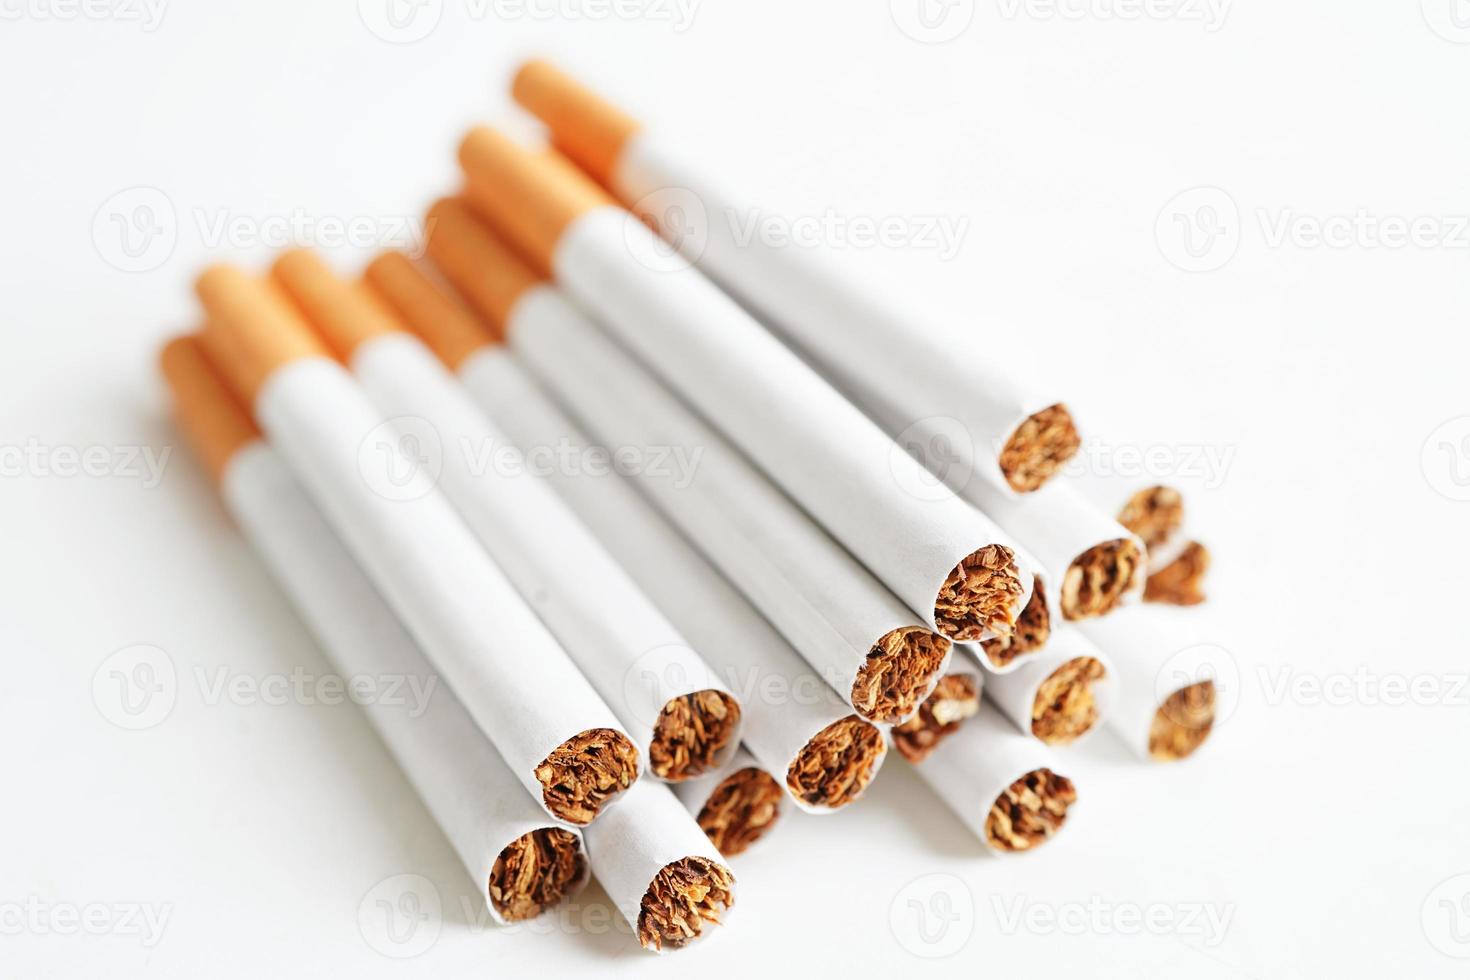 sigaret geïsoleerd op een witte achtergrond met uitknippad, roltabak in papier met filterbuis, niet roken concept. foto